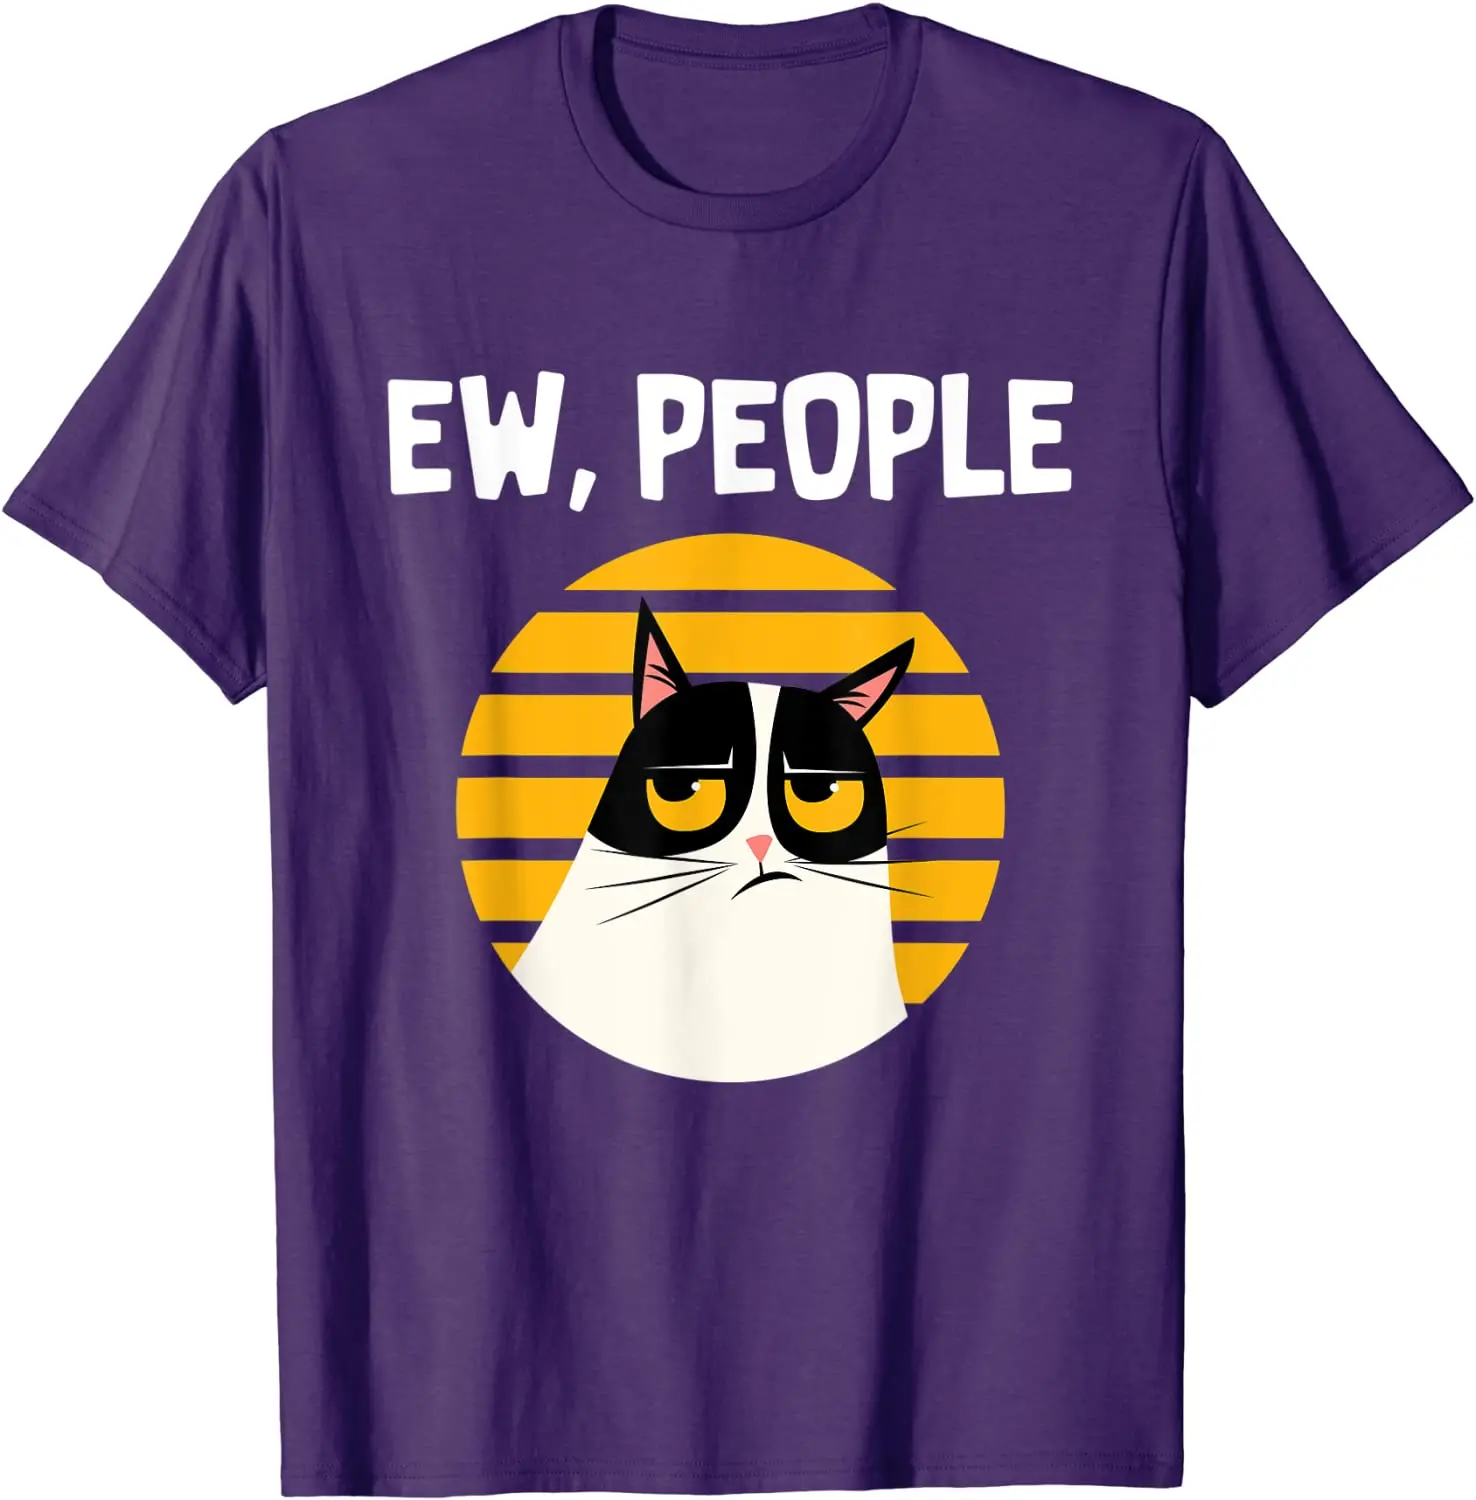 

Забавная футболка Ew, People с изображением кота, подарка для любимого человека, Забавные футболки для мужчин, забавные хлопковые футболки